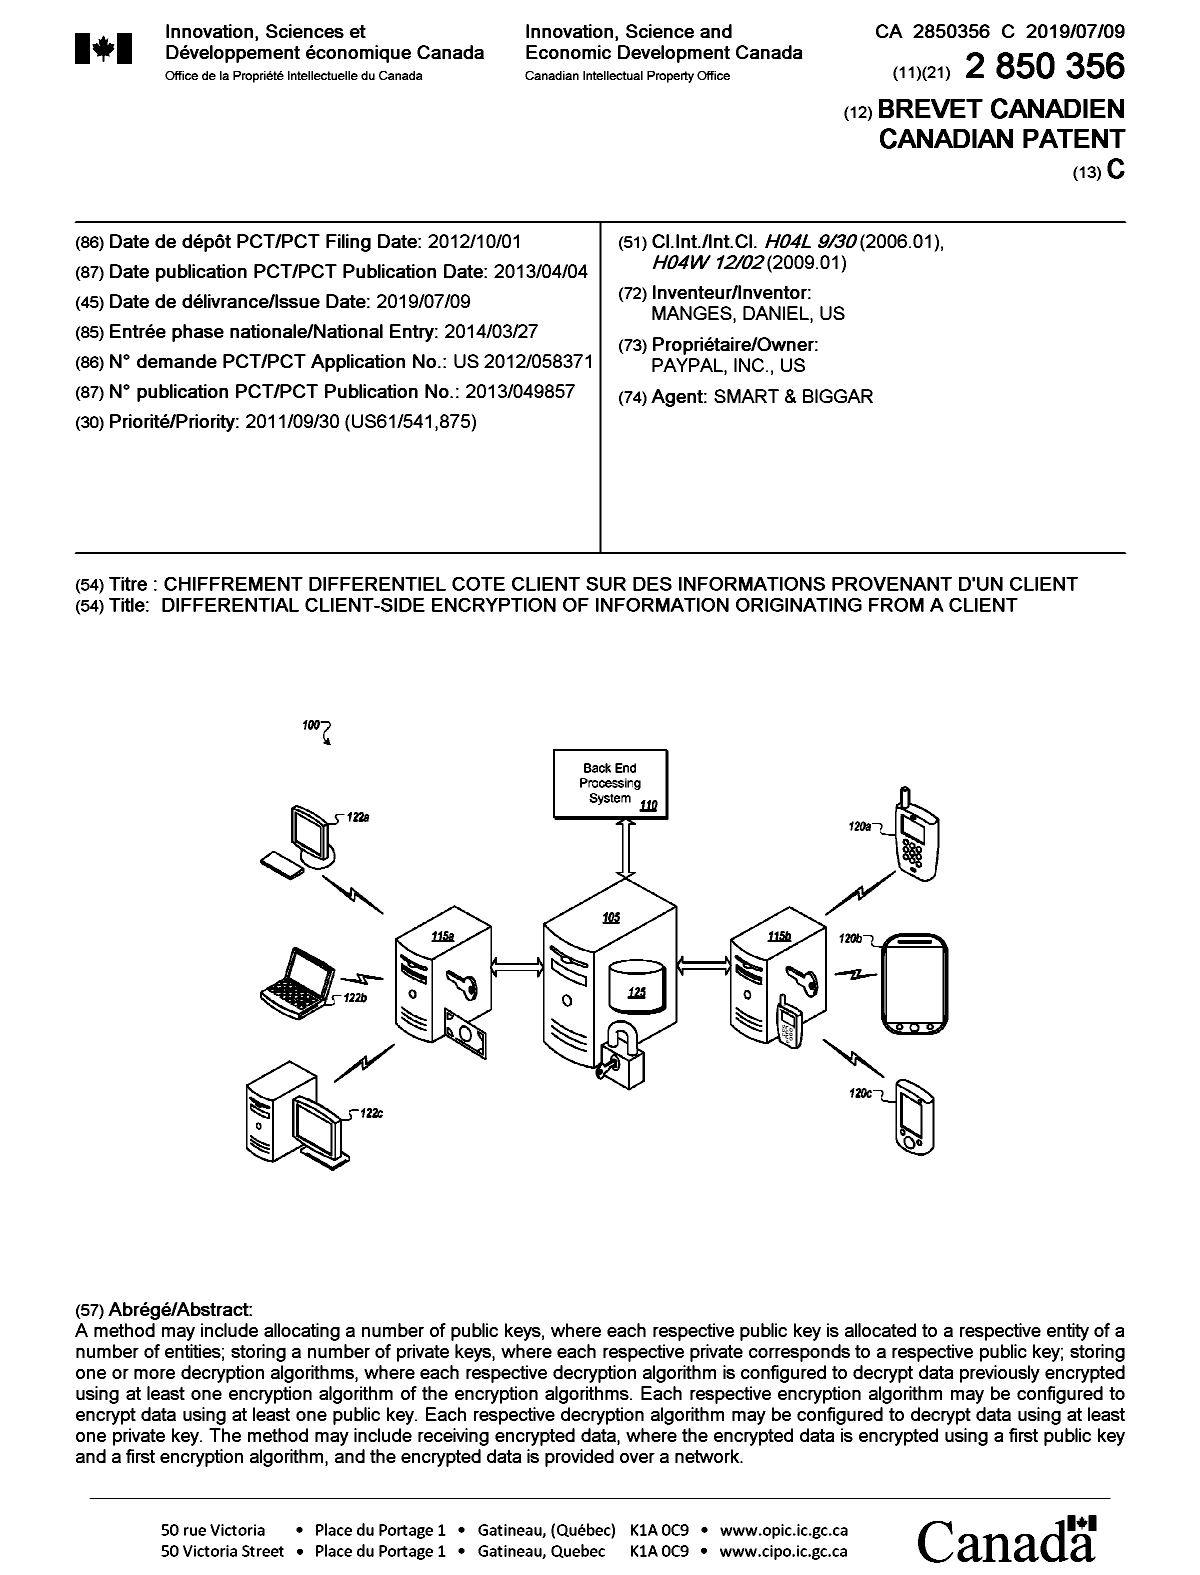 Document de brevet canadien 2850356. Page couverture 20190610. Image 1 de 1